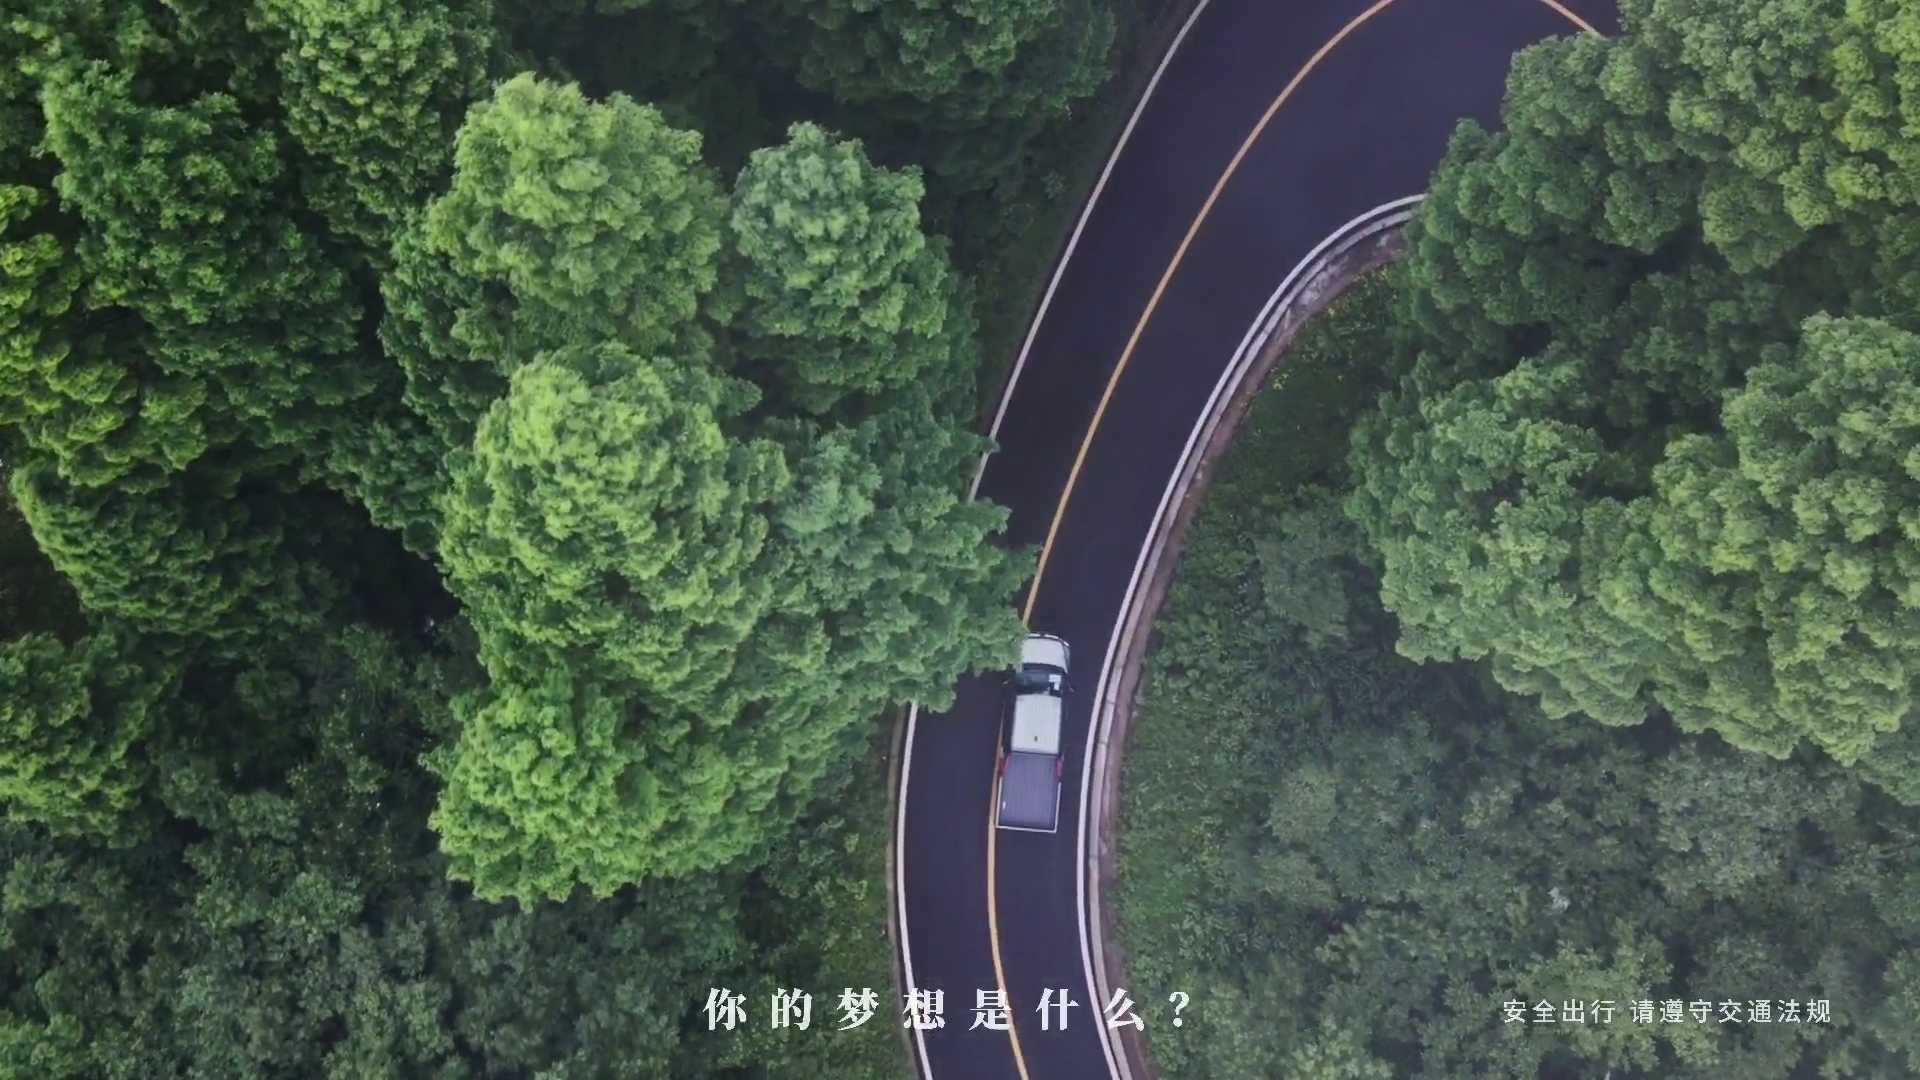 五菱汽车-征途皮卡创意广告《风光篇》